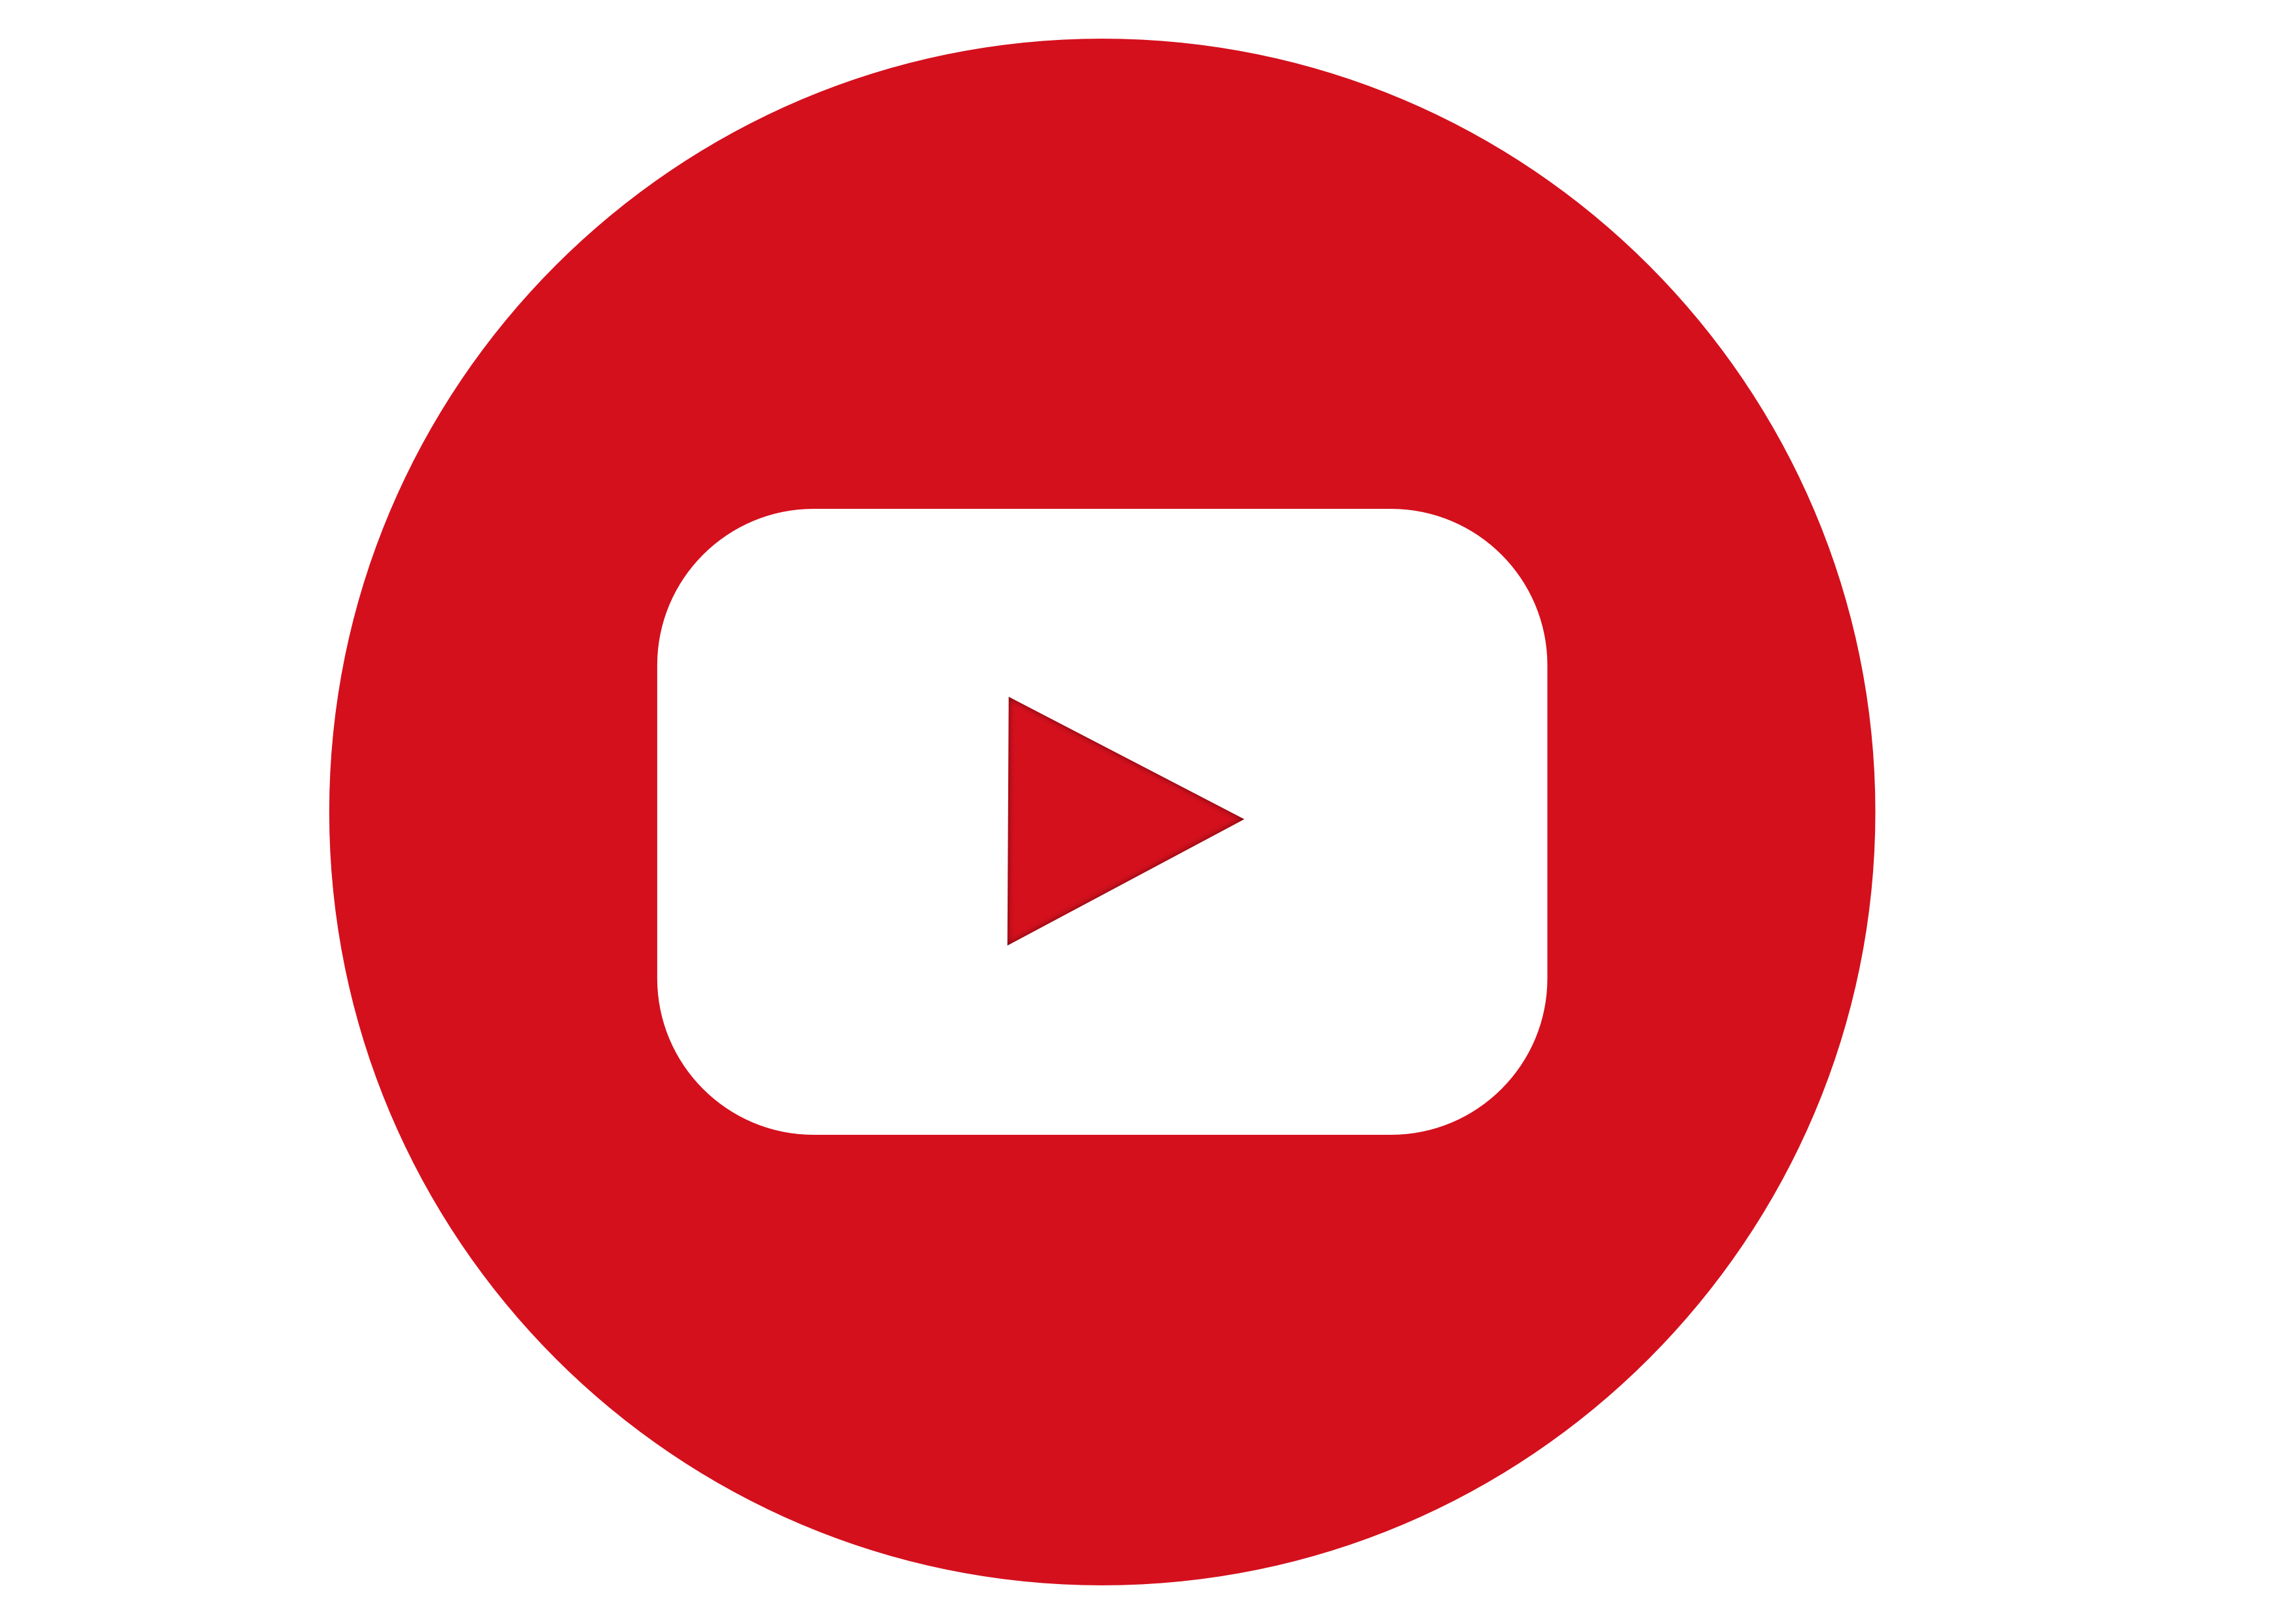 Ютуб лого. Значок ютуб PNG. Логотип youtube на белом фоне. Ютуб лого без фона.